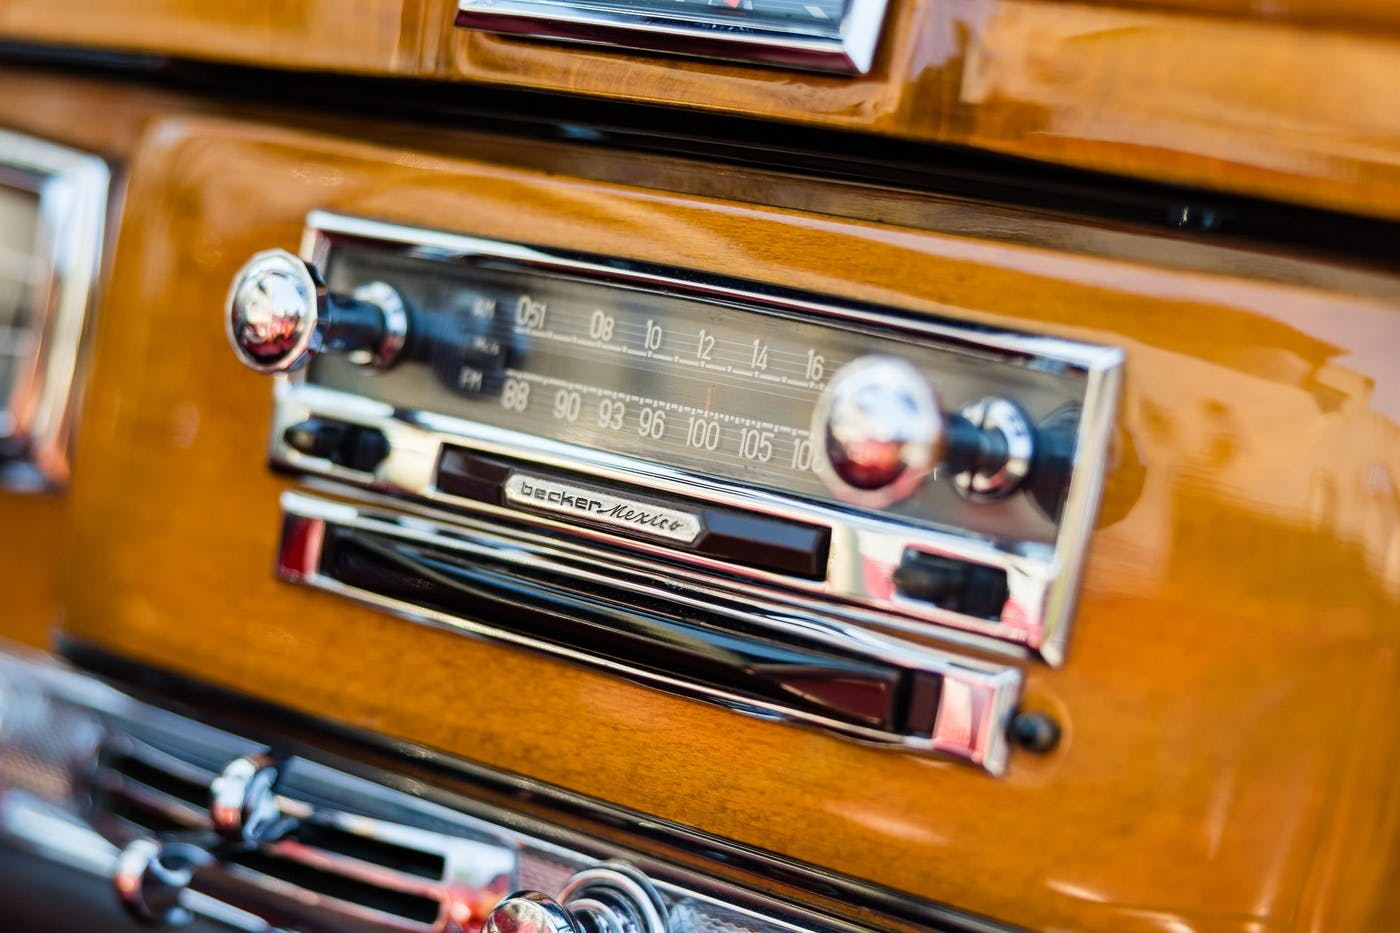 Ella Fitzgerald - 1959 Mercedes-Benz 300D - radio